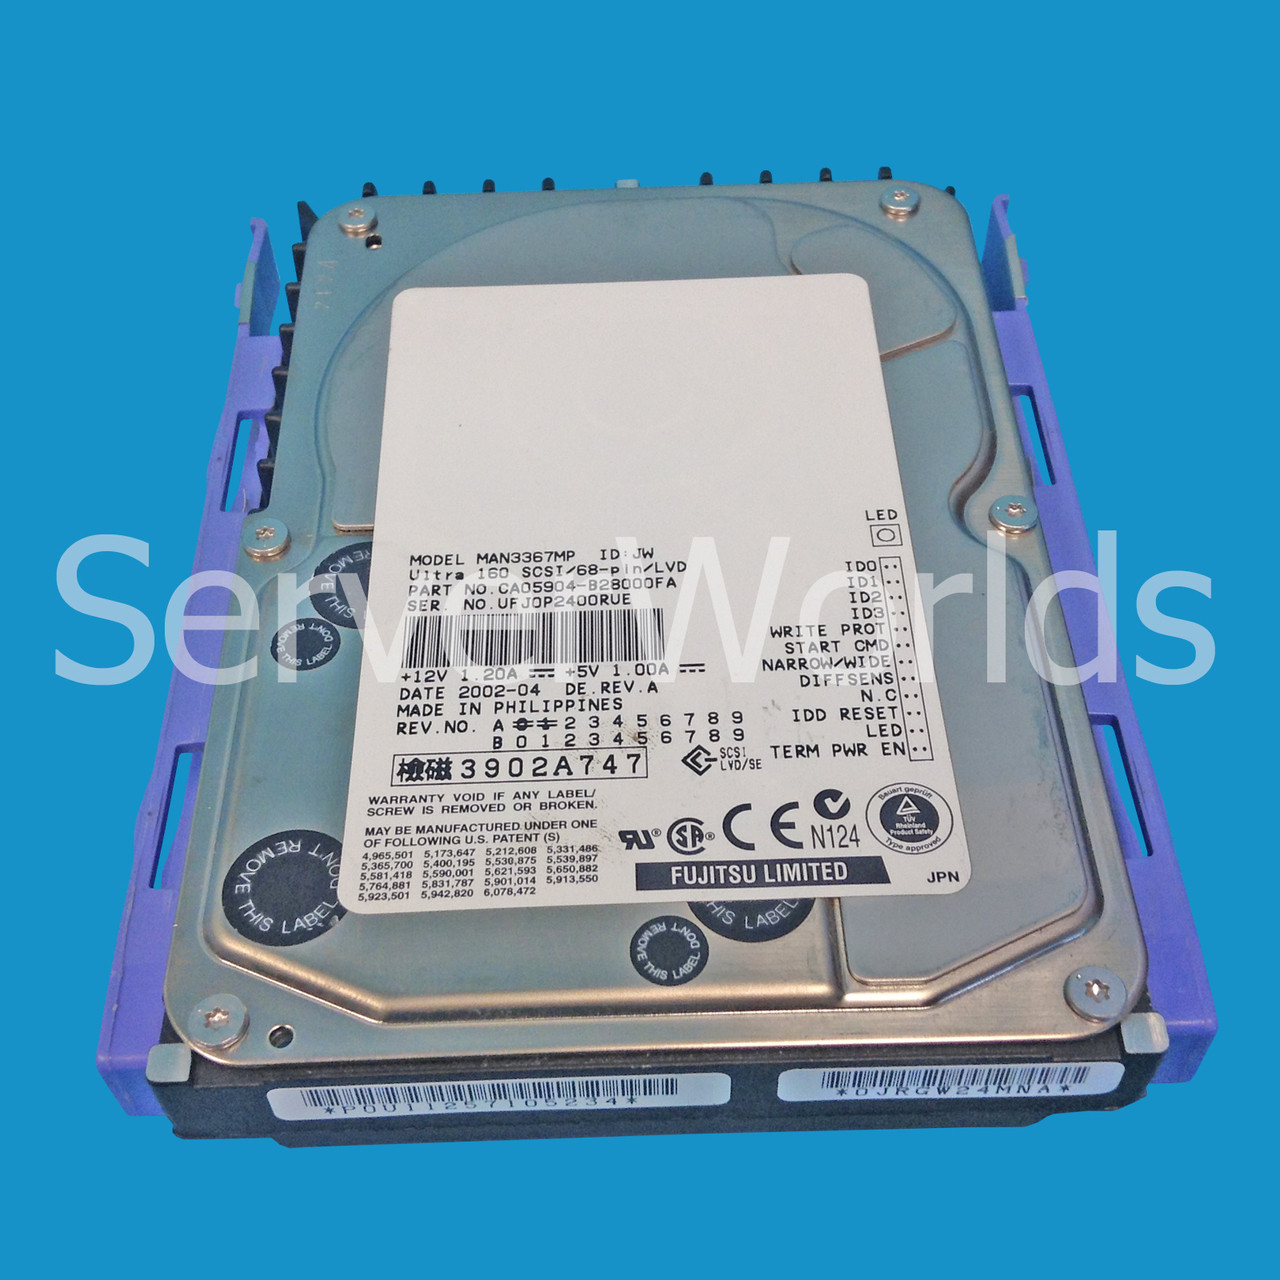 Fujitsu MAN3367MP 36GB 10K U160 68pin SCSI Hard Drive